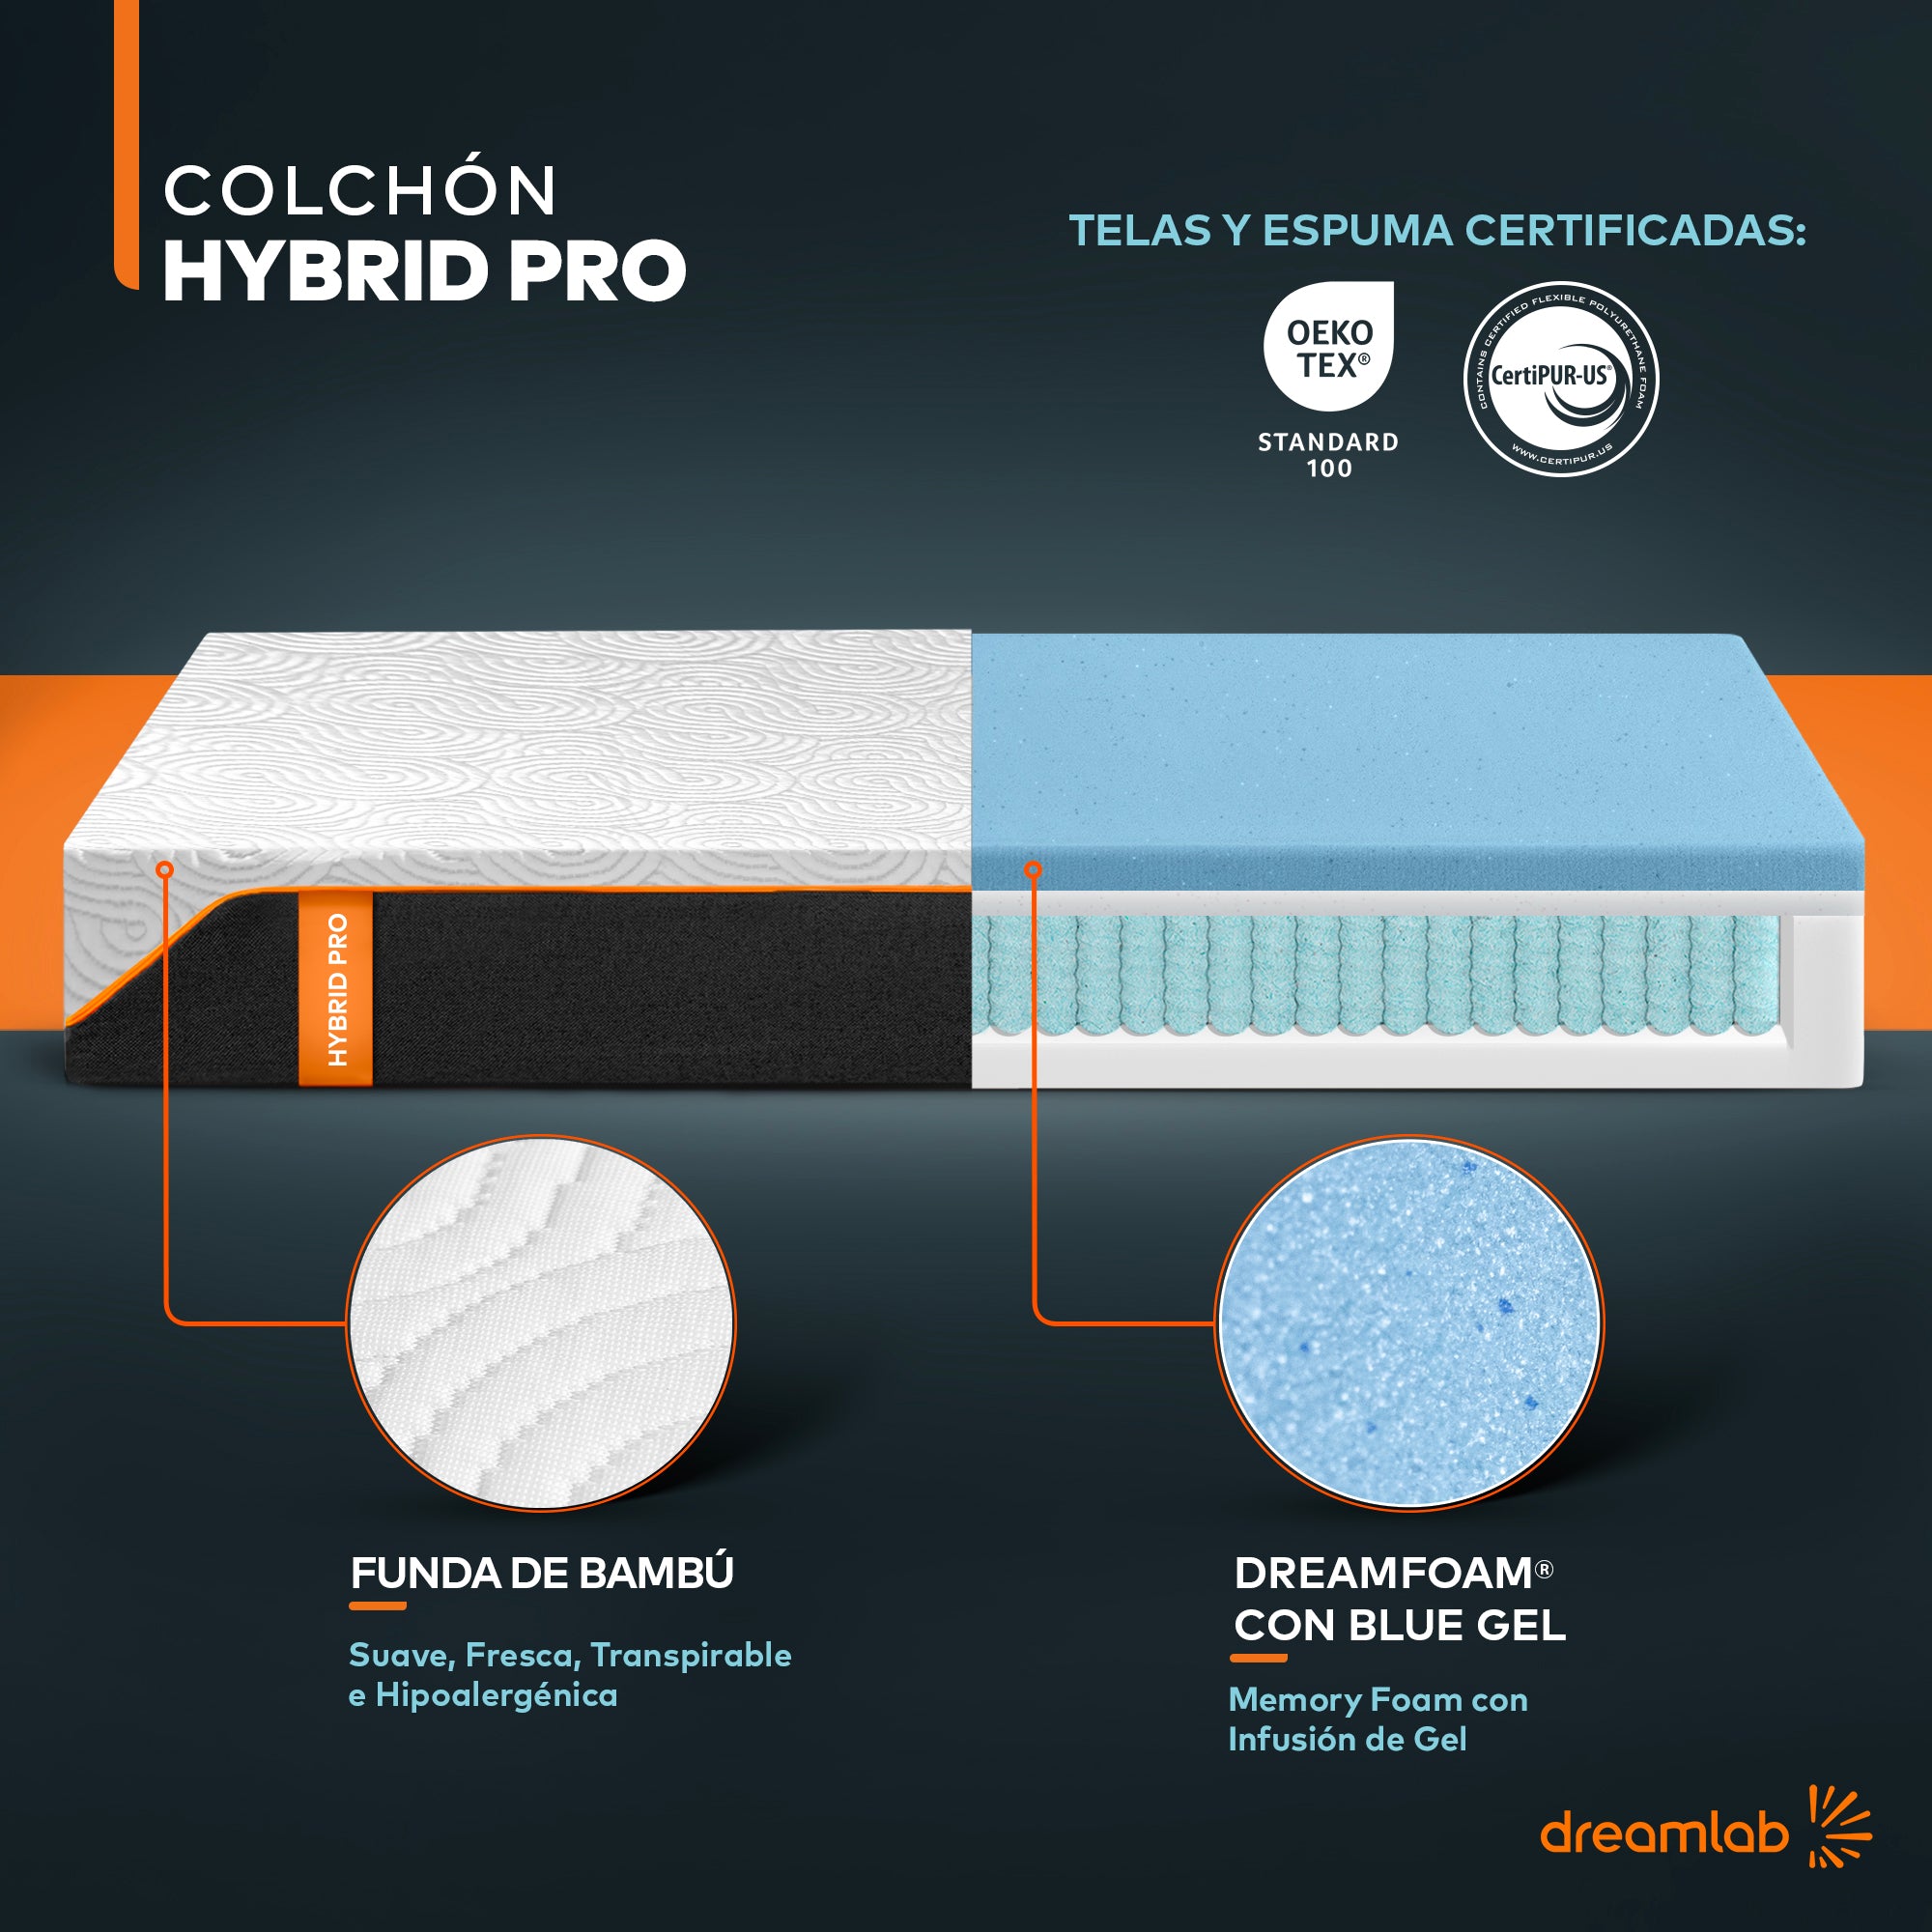 Colchón Hybrid Pro